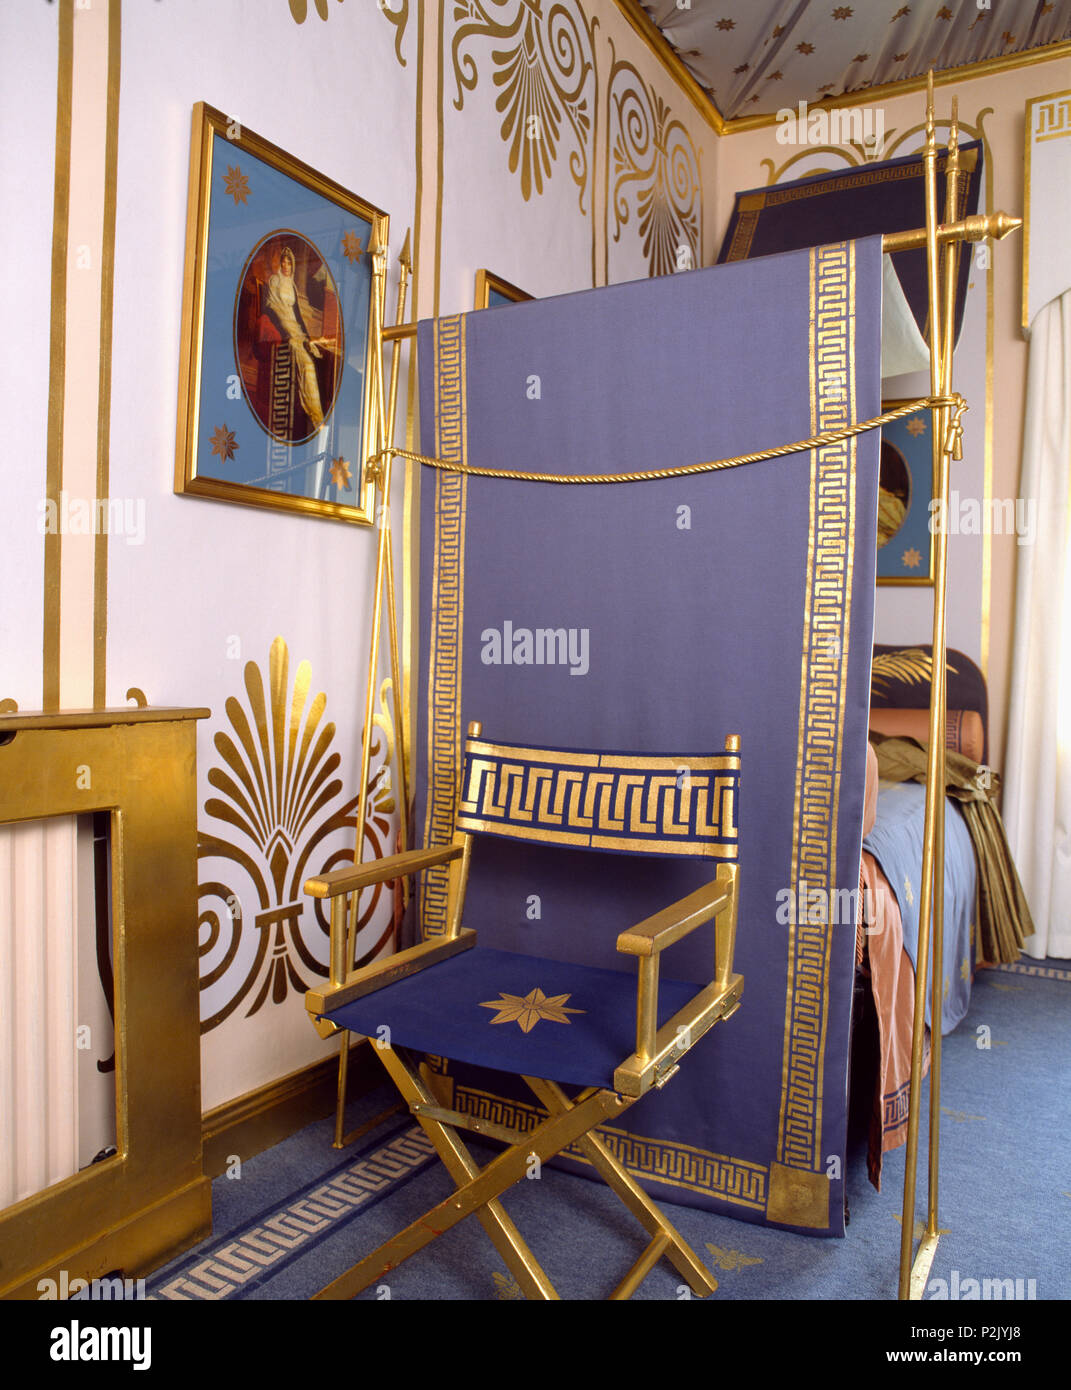 Gold-lackiert Direktor Stuhl mit gold Griechische key Design auf lila  Schlinge gegen Bett mit passenden blau + gold Vordach Stockfotografie -  Alamy